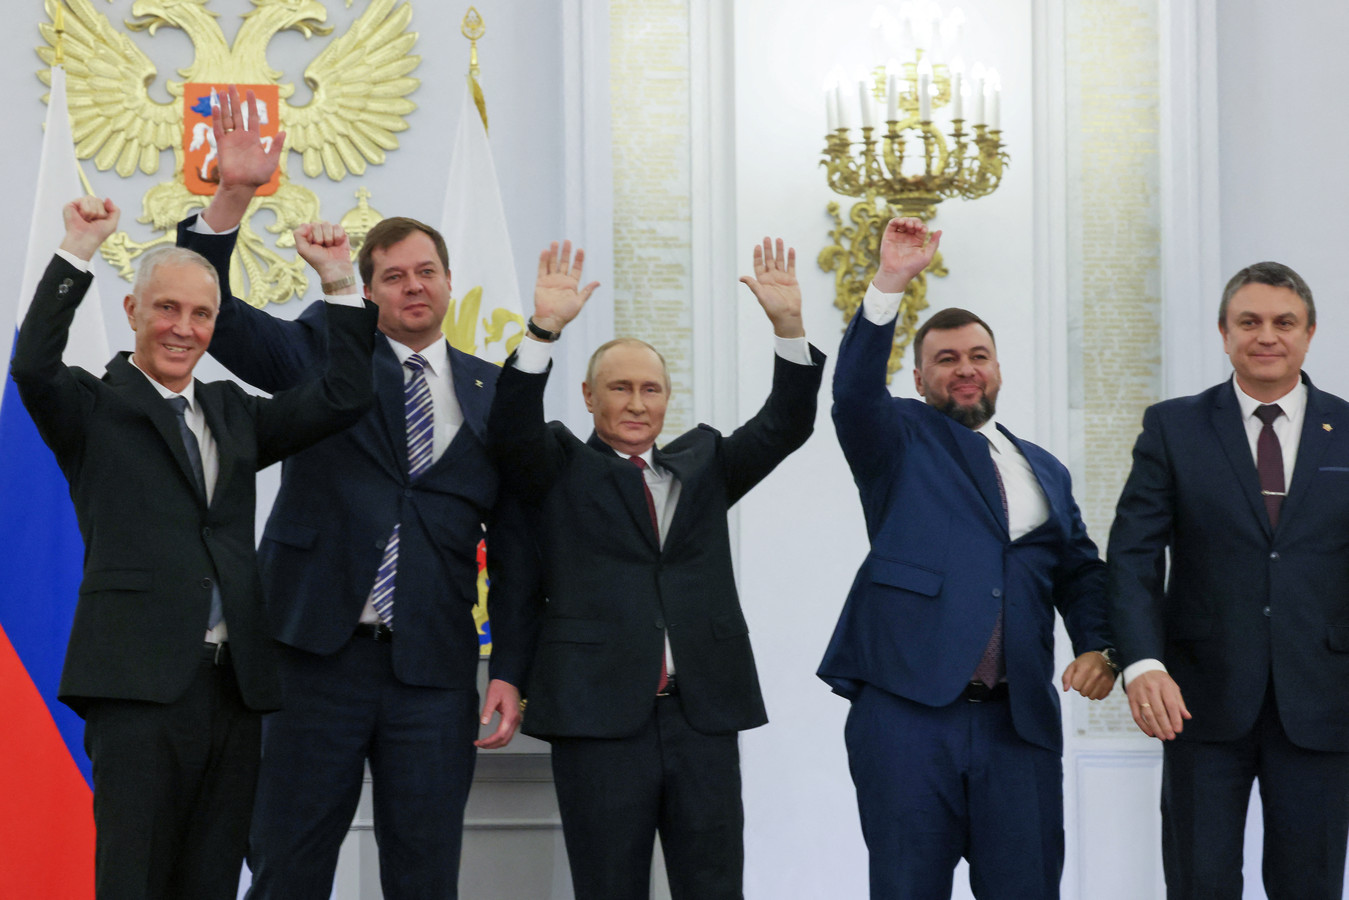 Poutine et les gouverneurs des oblasts annexés.jpg